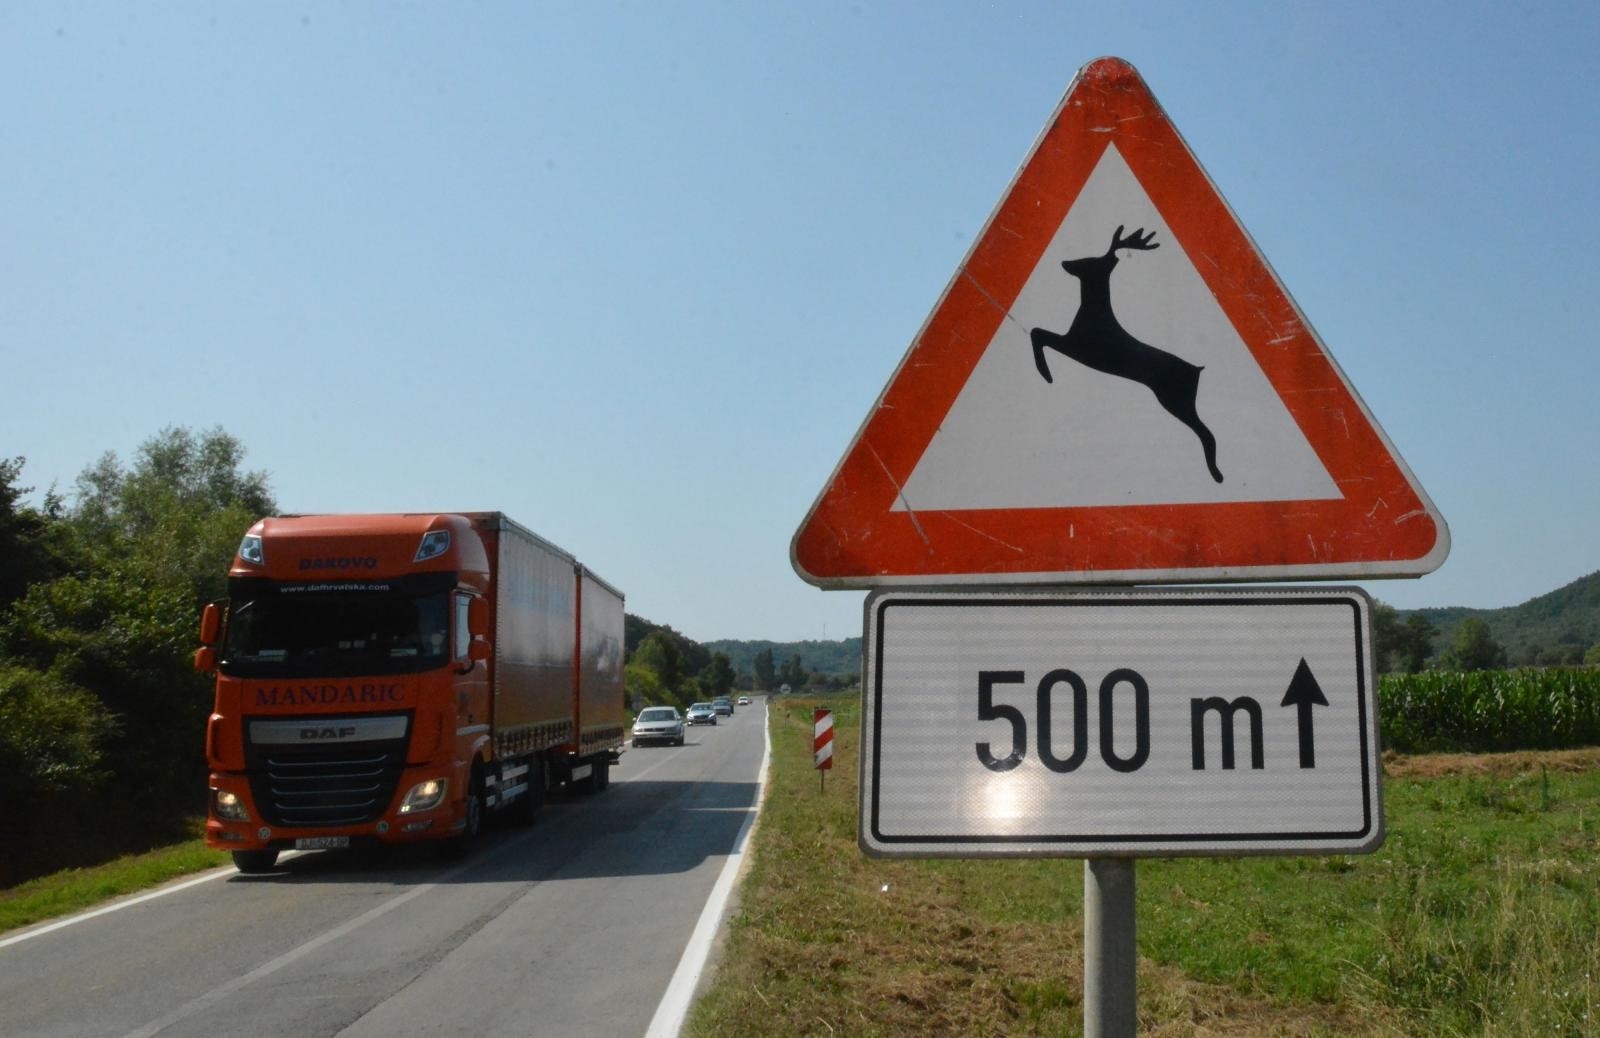 05.07.2019., Pozega - Prometni znak "divljac na cesti" na prometnici Slavonski Brod - Pozega. Photo: Ivica Galovic/PIXSELL